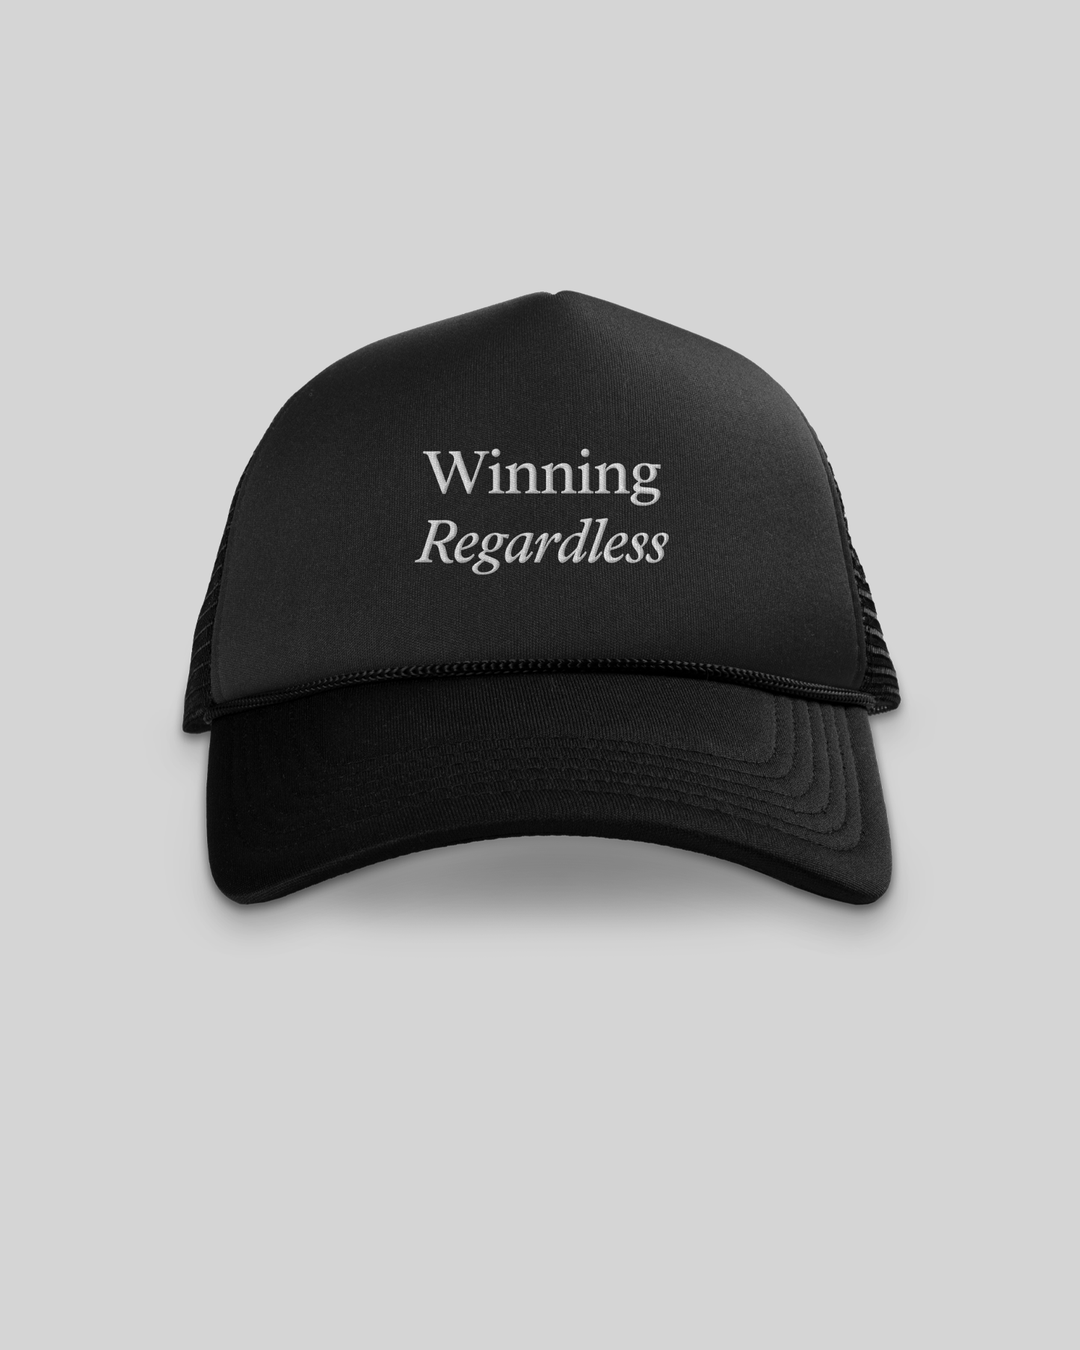 Winning Regardless Black 5 Panel Trucker Hat